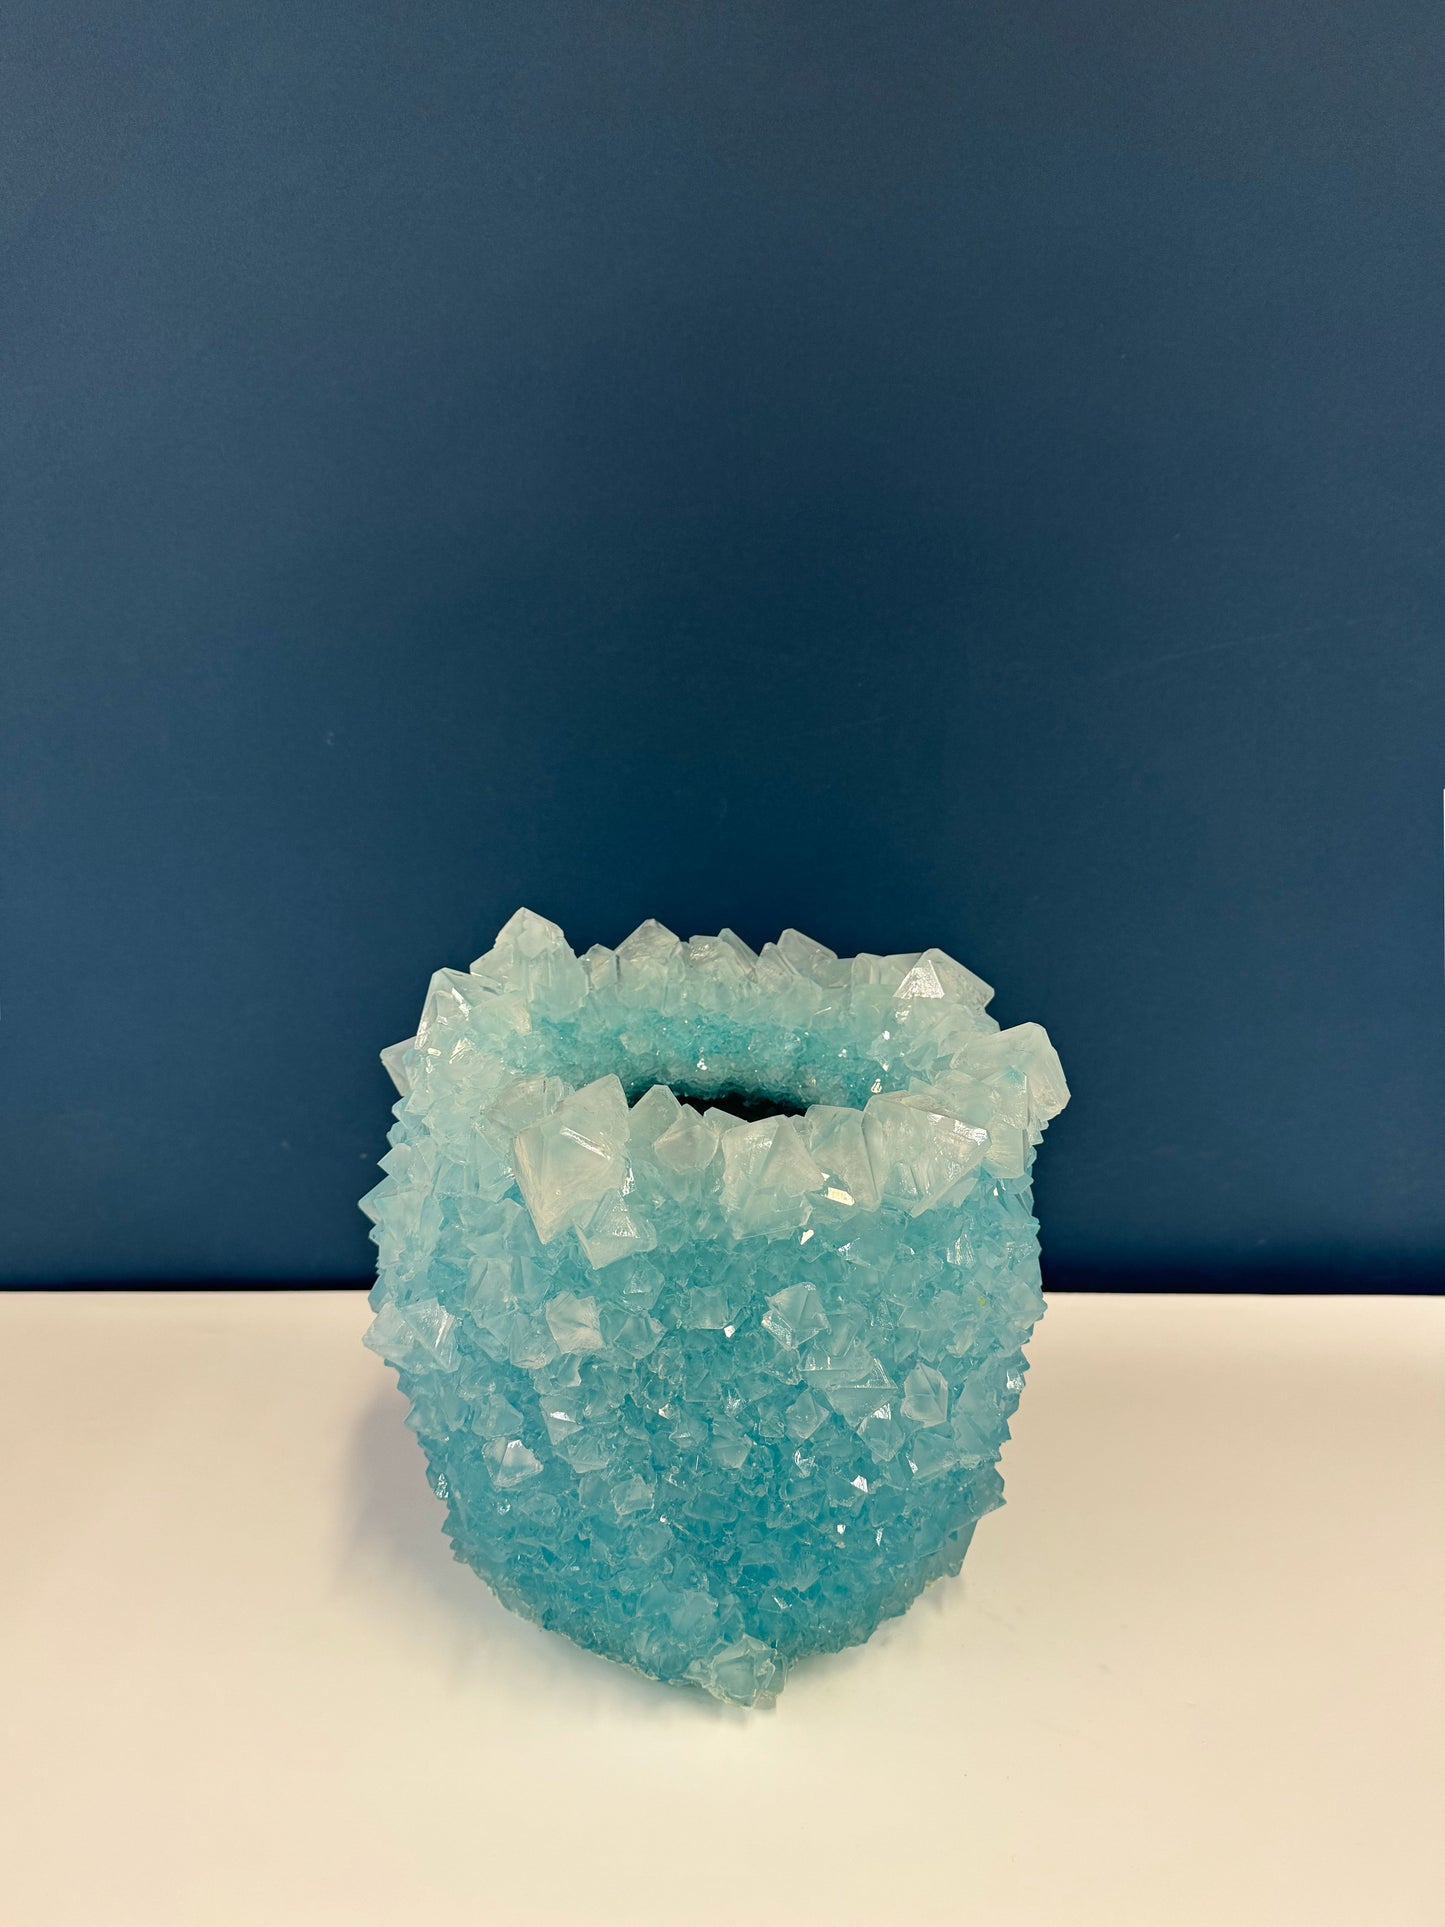 Large Vase - Ice Blue